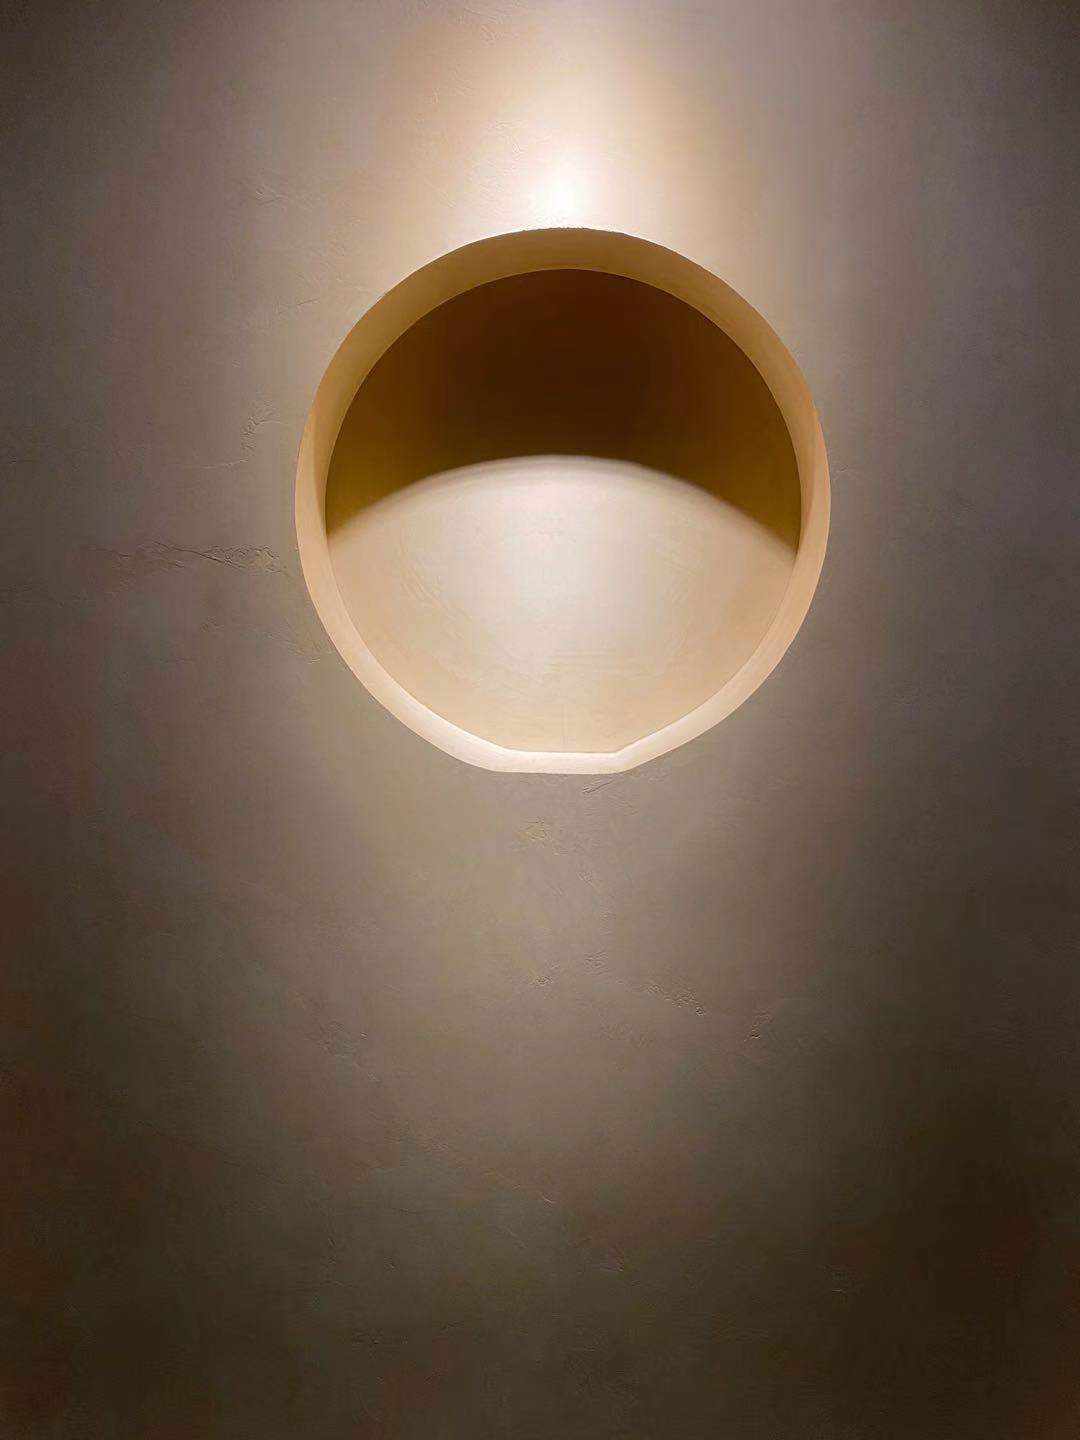 Mikrotsemendi vooder minimalistliku stiiliga elamise seinas, kus valgustus rõhutab kattematerjali